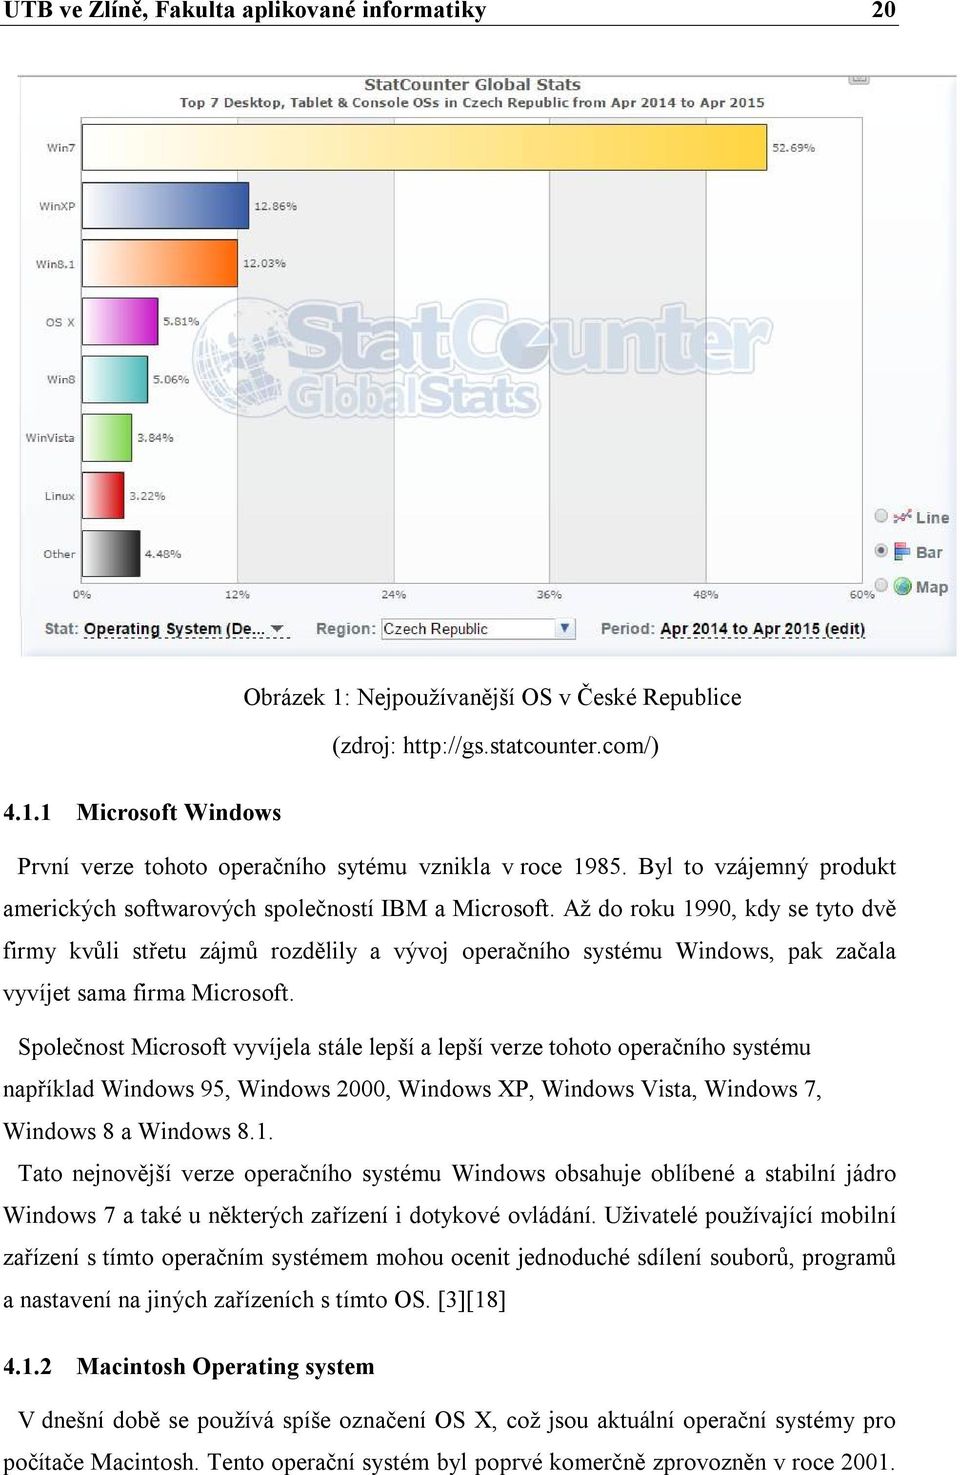 Až do roku 1990, kdy se tyto dvě firmy kvůli střetu zájmů rozdělily a vývoj operačního systému Windows, pak začala vyvíjet sama firma Microsoft.